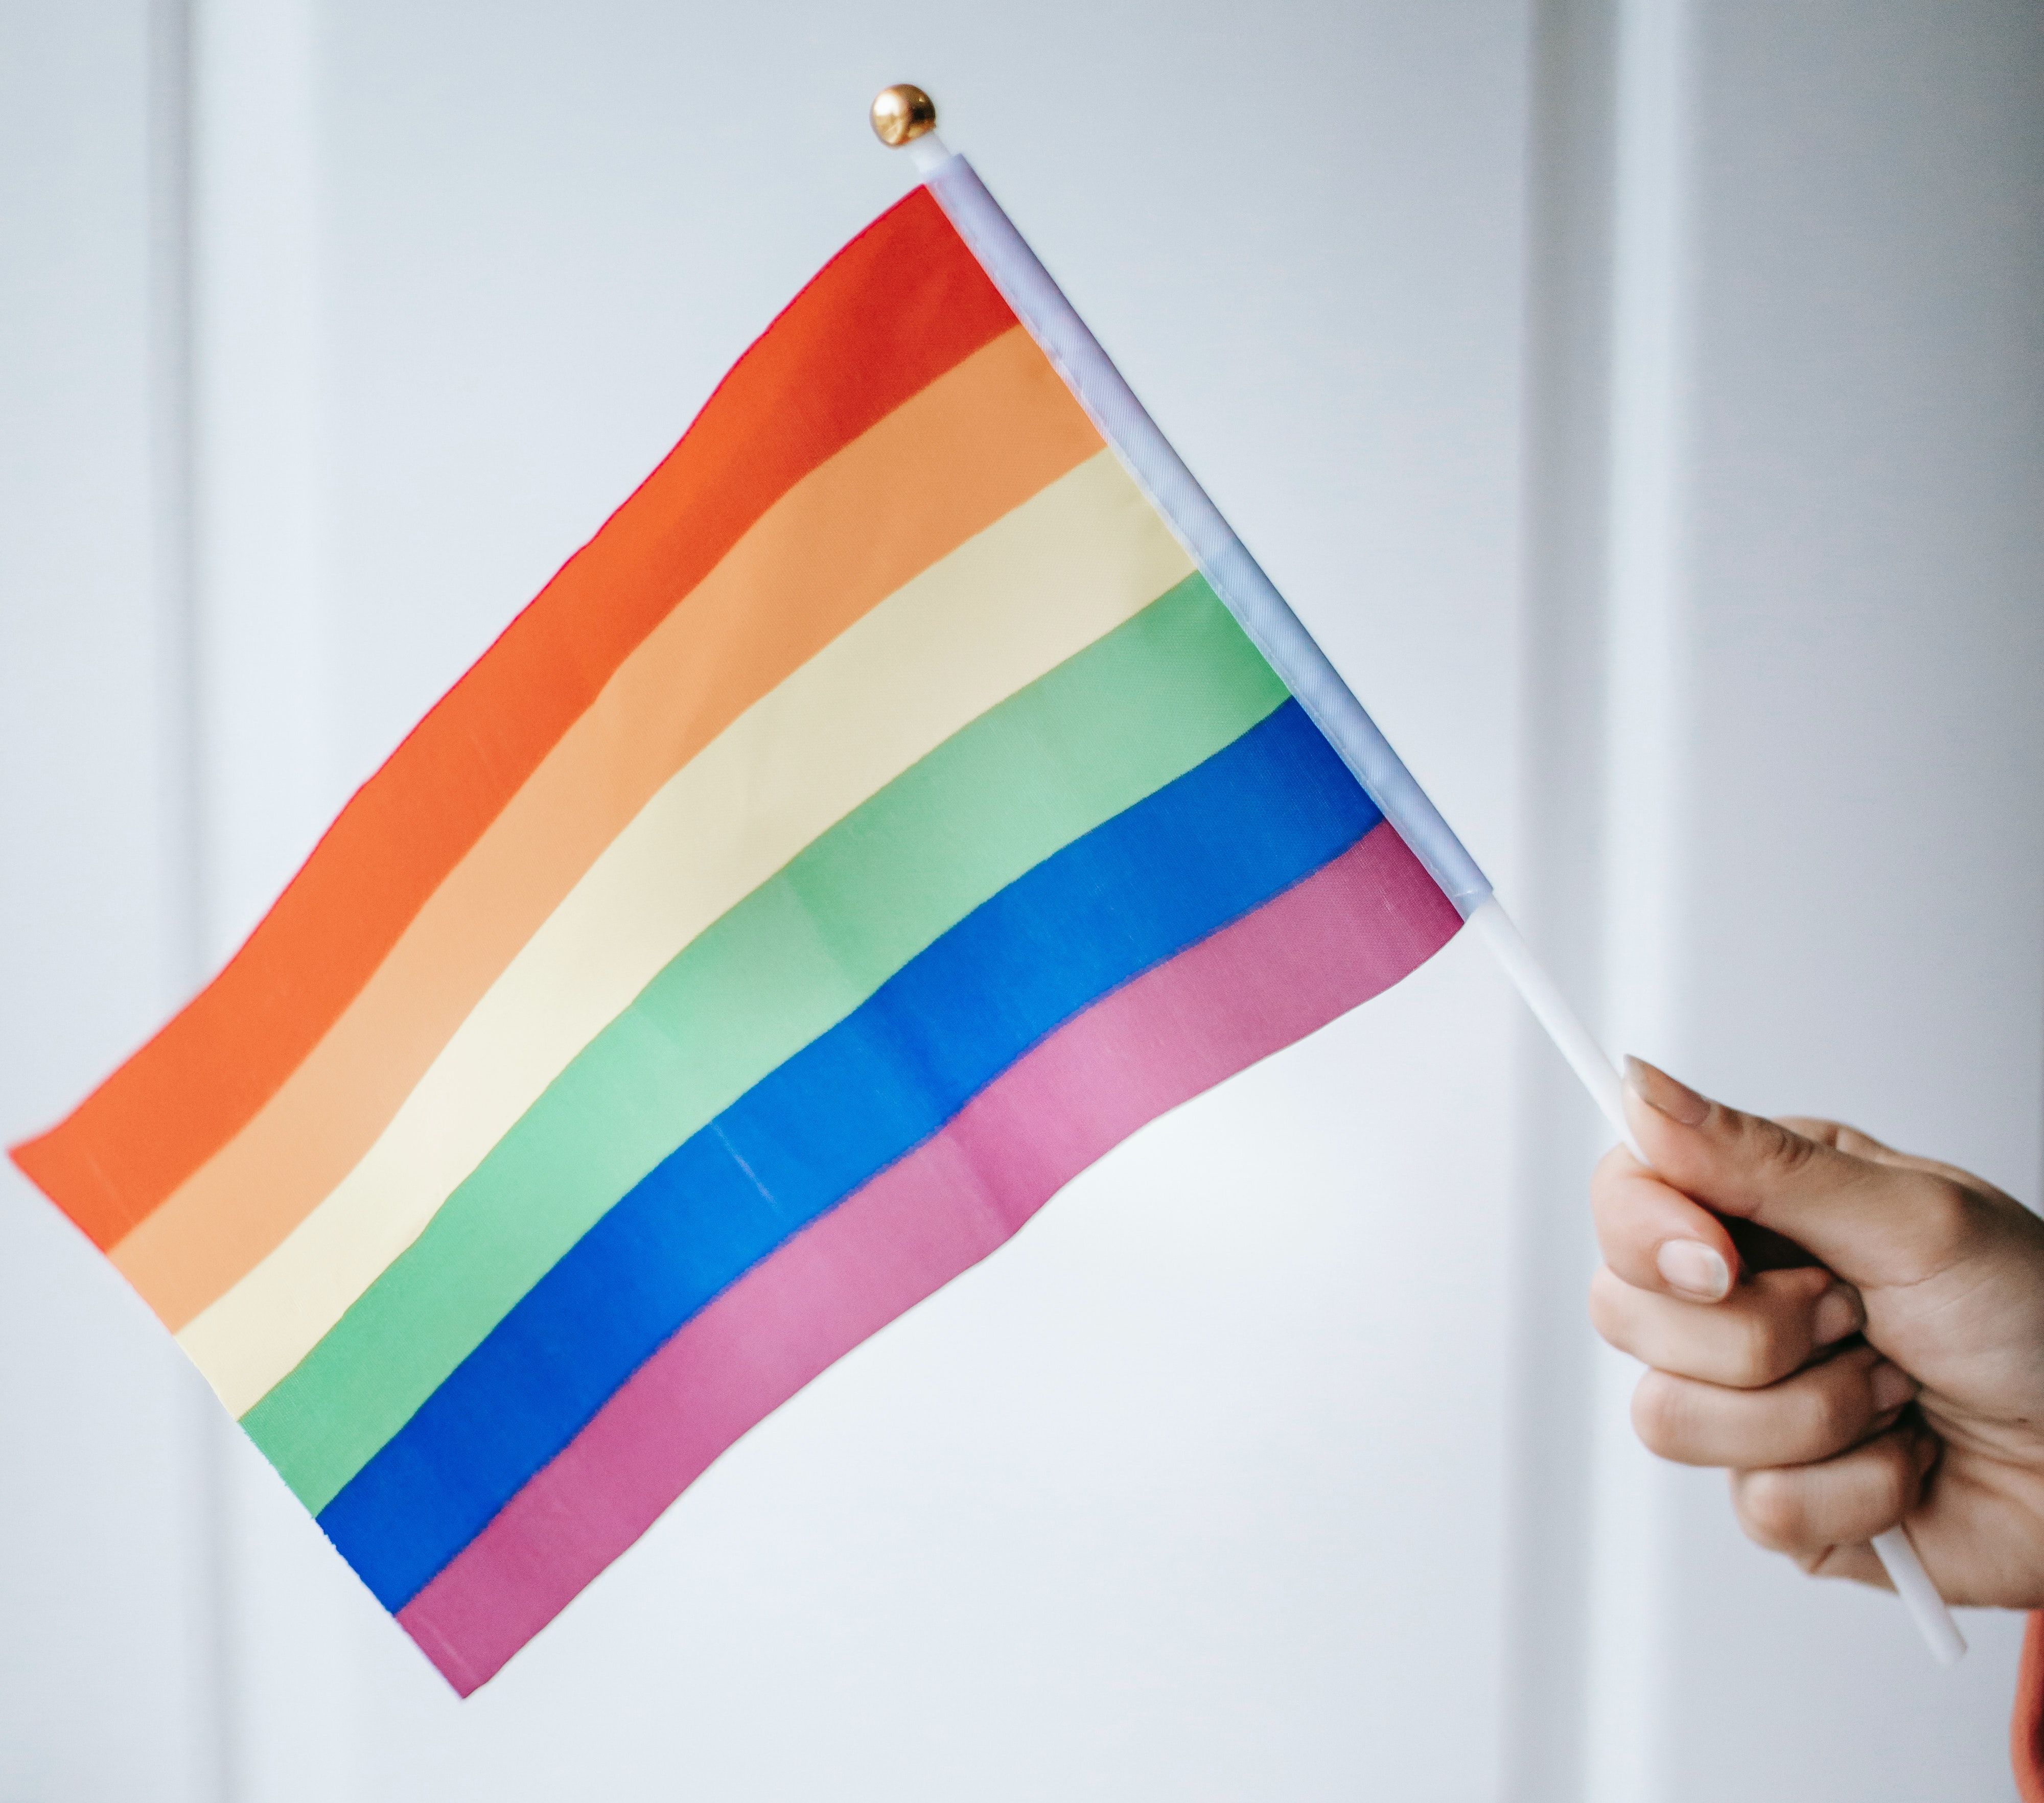 A hand holding a small rainbow flag - LGBT